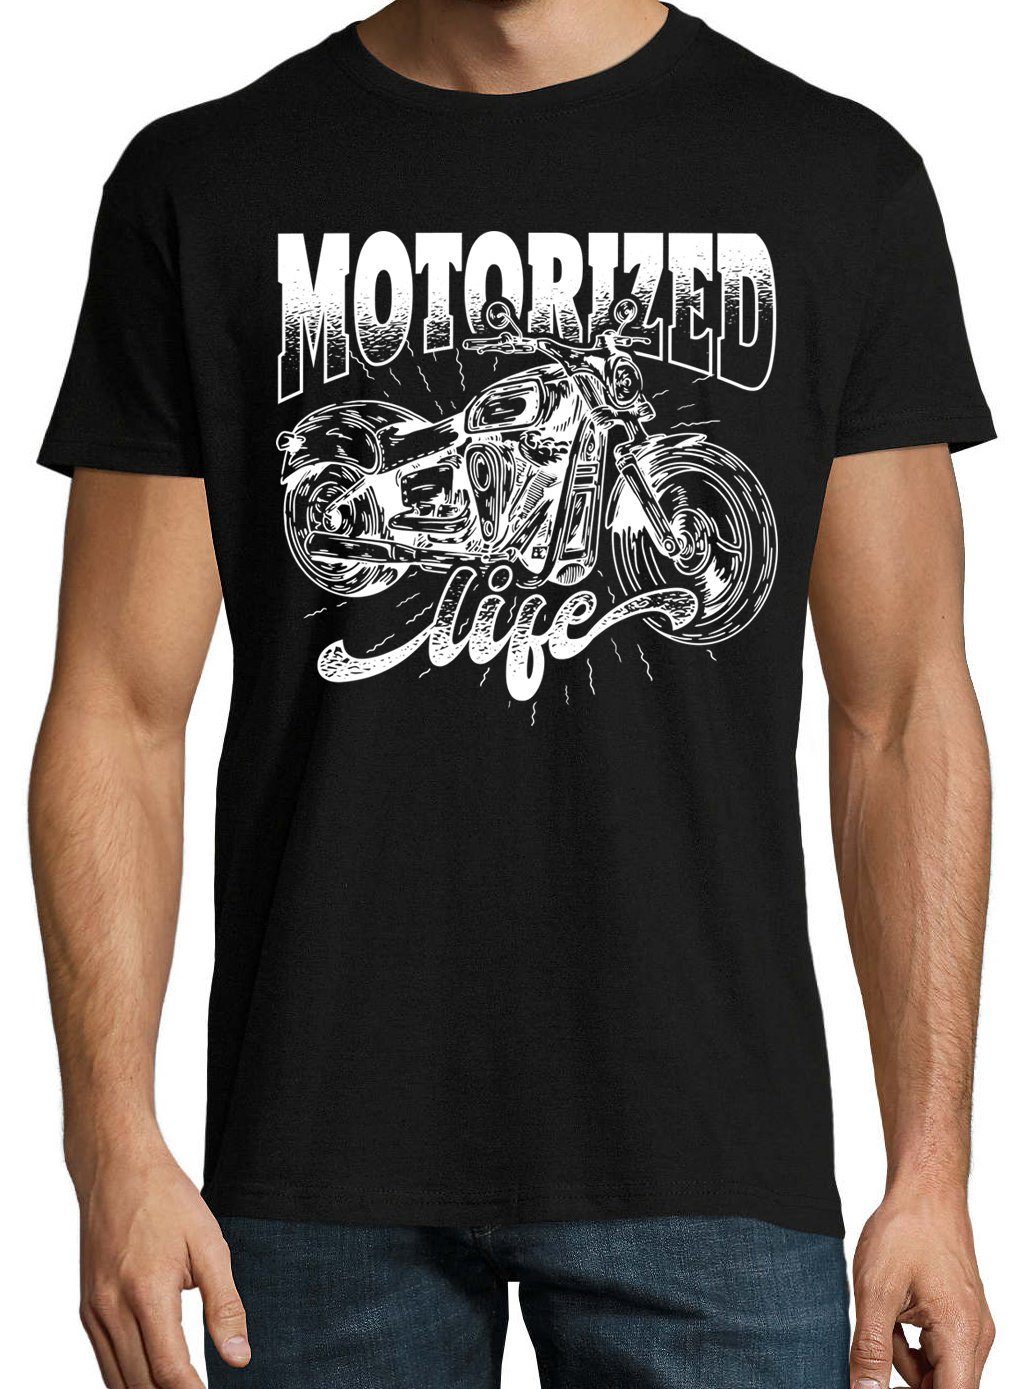 Schwarz Youth Spruch life lustigem Motorized Designz Shirt T-Shirt Herren mit